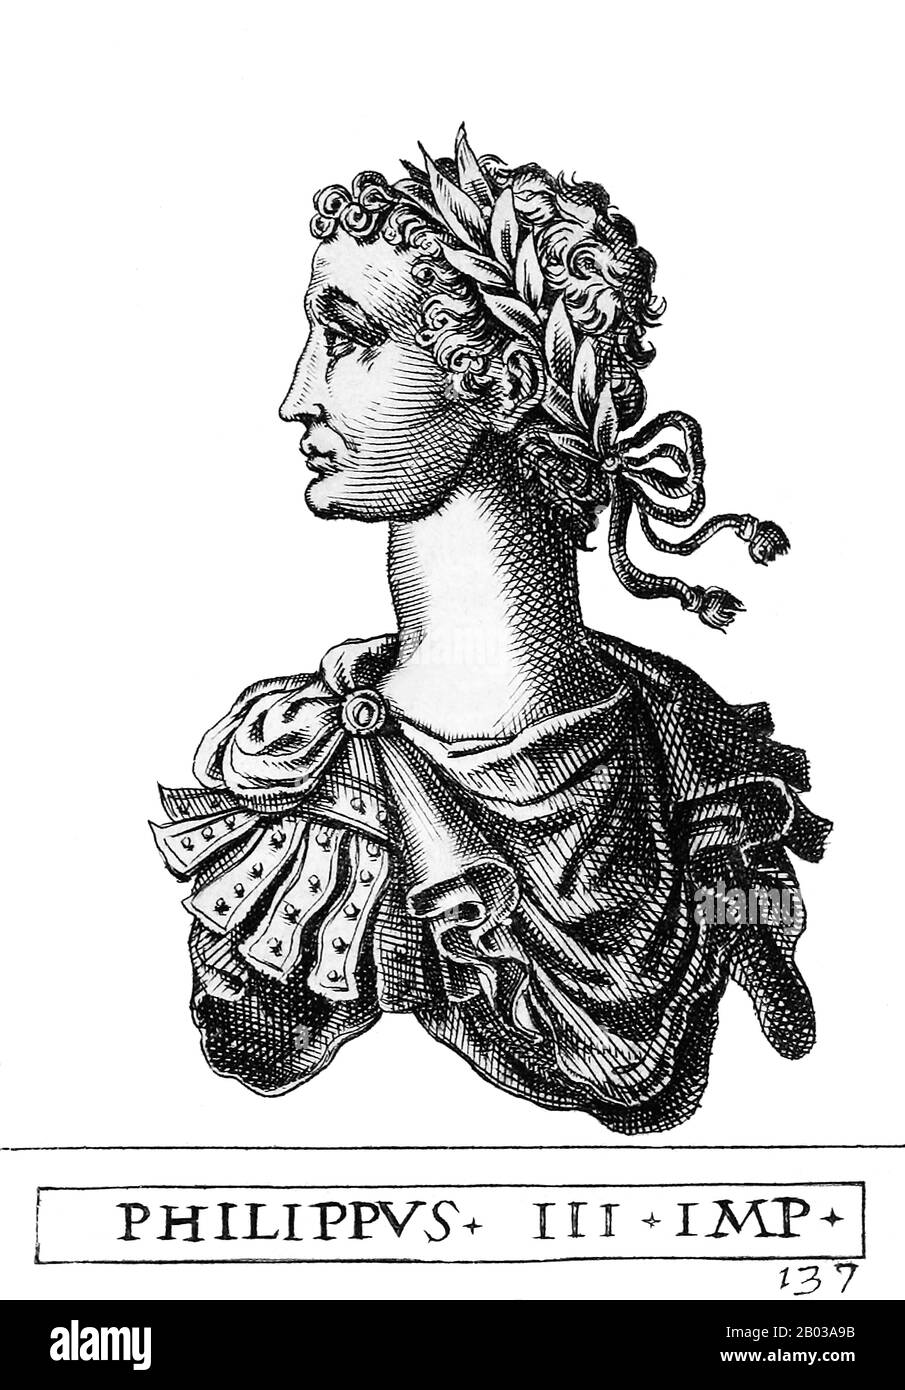 Philipp (1177-1208), auch Philipp von Schwaben genannt, war der jüngste Sohn von Kaiser Friedrich I. und jüngerer Bruder von Kaiser Heinrich VI Philipp war ursprünglich auf ein Leben in der Geistlichkeit vorbereitet, aber er verließ seine kirchliche Berufung im Jahre 1191, nachdem er nach Italien gereist war, und wurde im Jahre 1195 zum Herzog der Toskana gemacht, sowie nach dem Tod seines Bruders Conrad im Jahre 1196 zum Herzog von Schwaben. Er heiratete im Jahr 1197 die Prinzessin Irene Angelina, Tochter des byzantinischen Kaiser Isaac II Angelos. Stockfoto